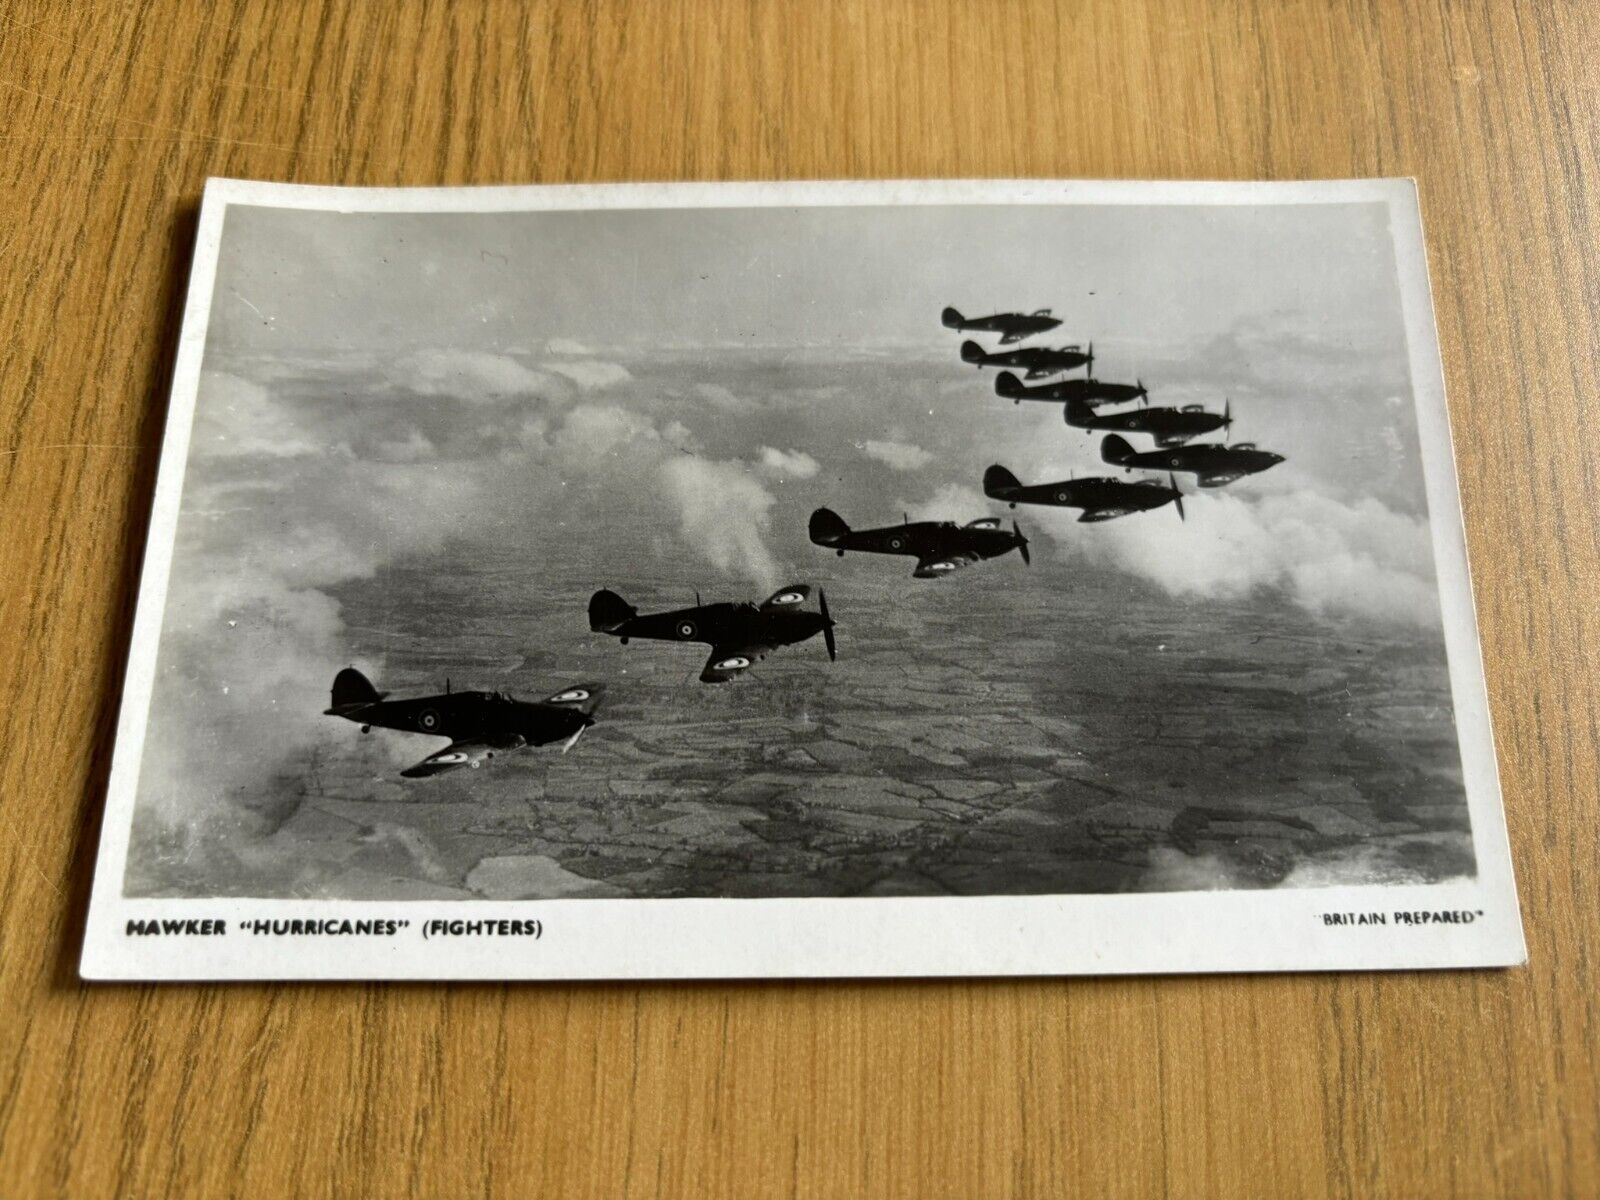 Royal Air Force Hawker Hurricane postcard